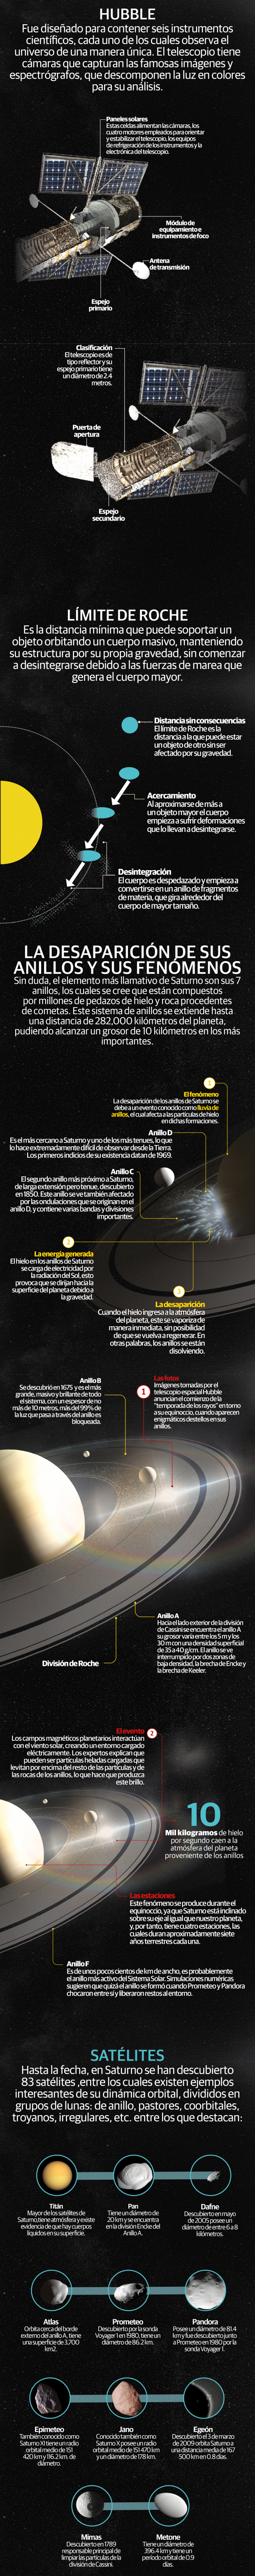 Los anillos de Saturno desaparecen; en ellos surgen fenómenos relacionados con las estaciones